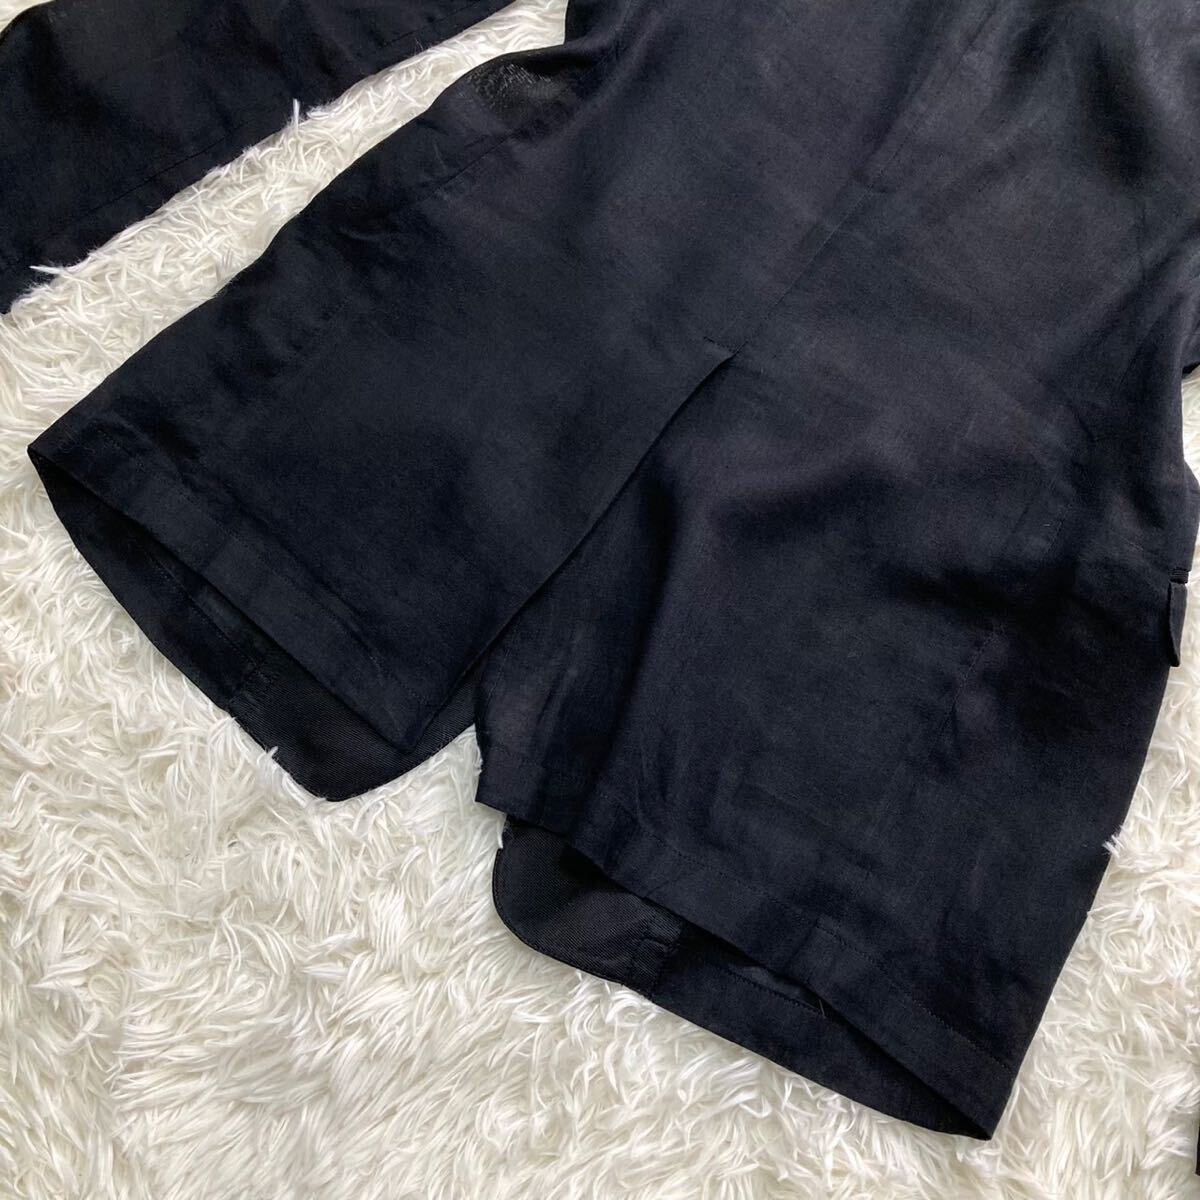  прекрасный товар L DOLCE&GABBANA Dolce & Gabbana tailored jacket GOLDlinen шелк блейзер 1B Anne темно синий чёрный черный мужской 48